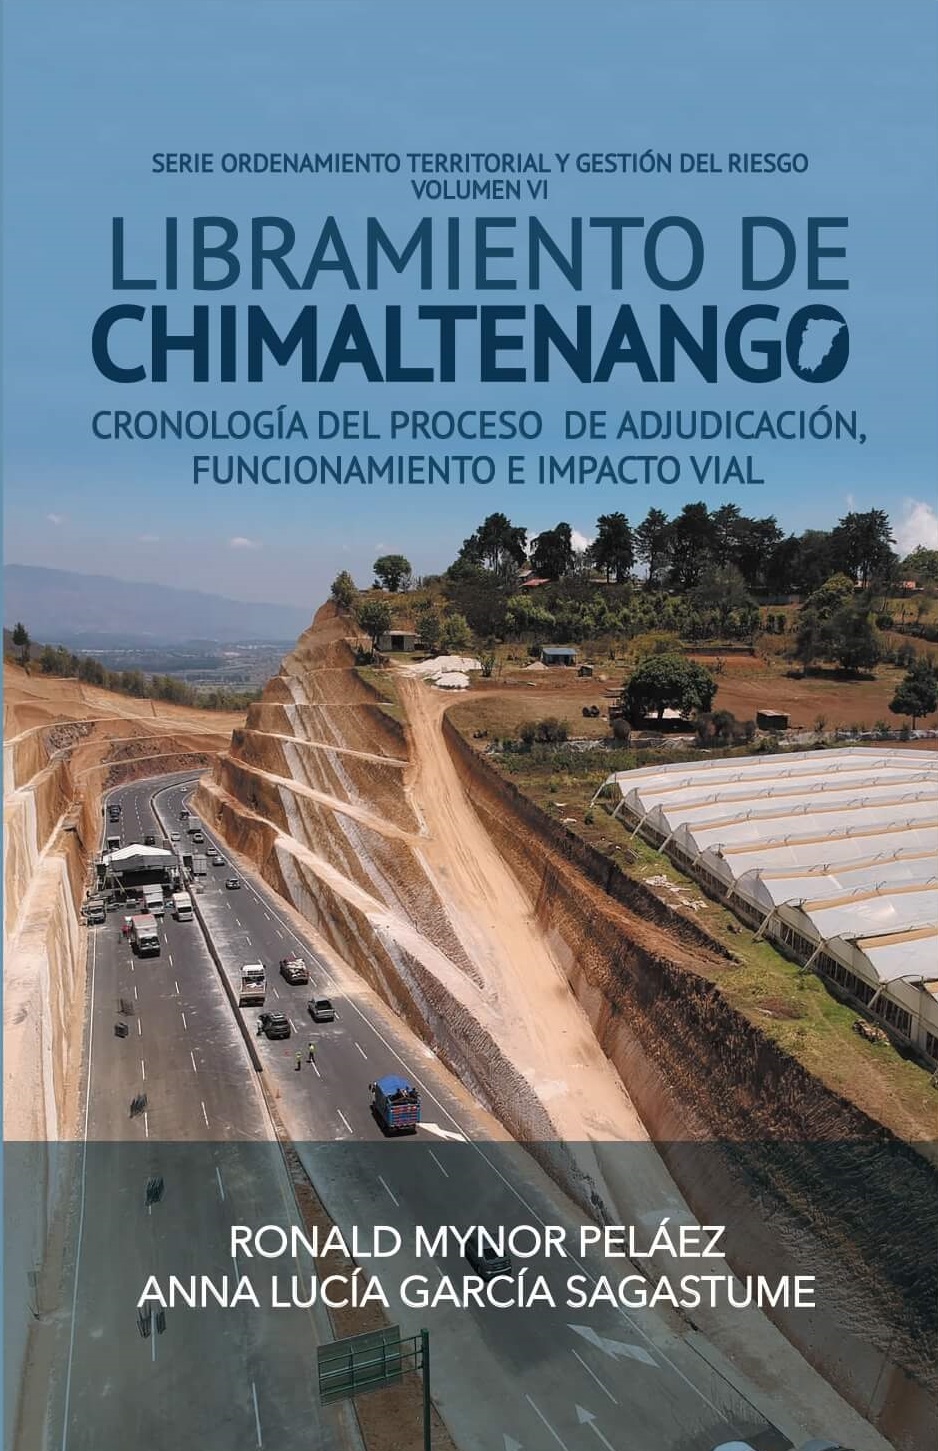 Libramiento de Chimaltenago: Cronológia del proceso de adjudicación funcionamiento e impacto vial